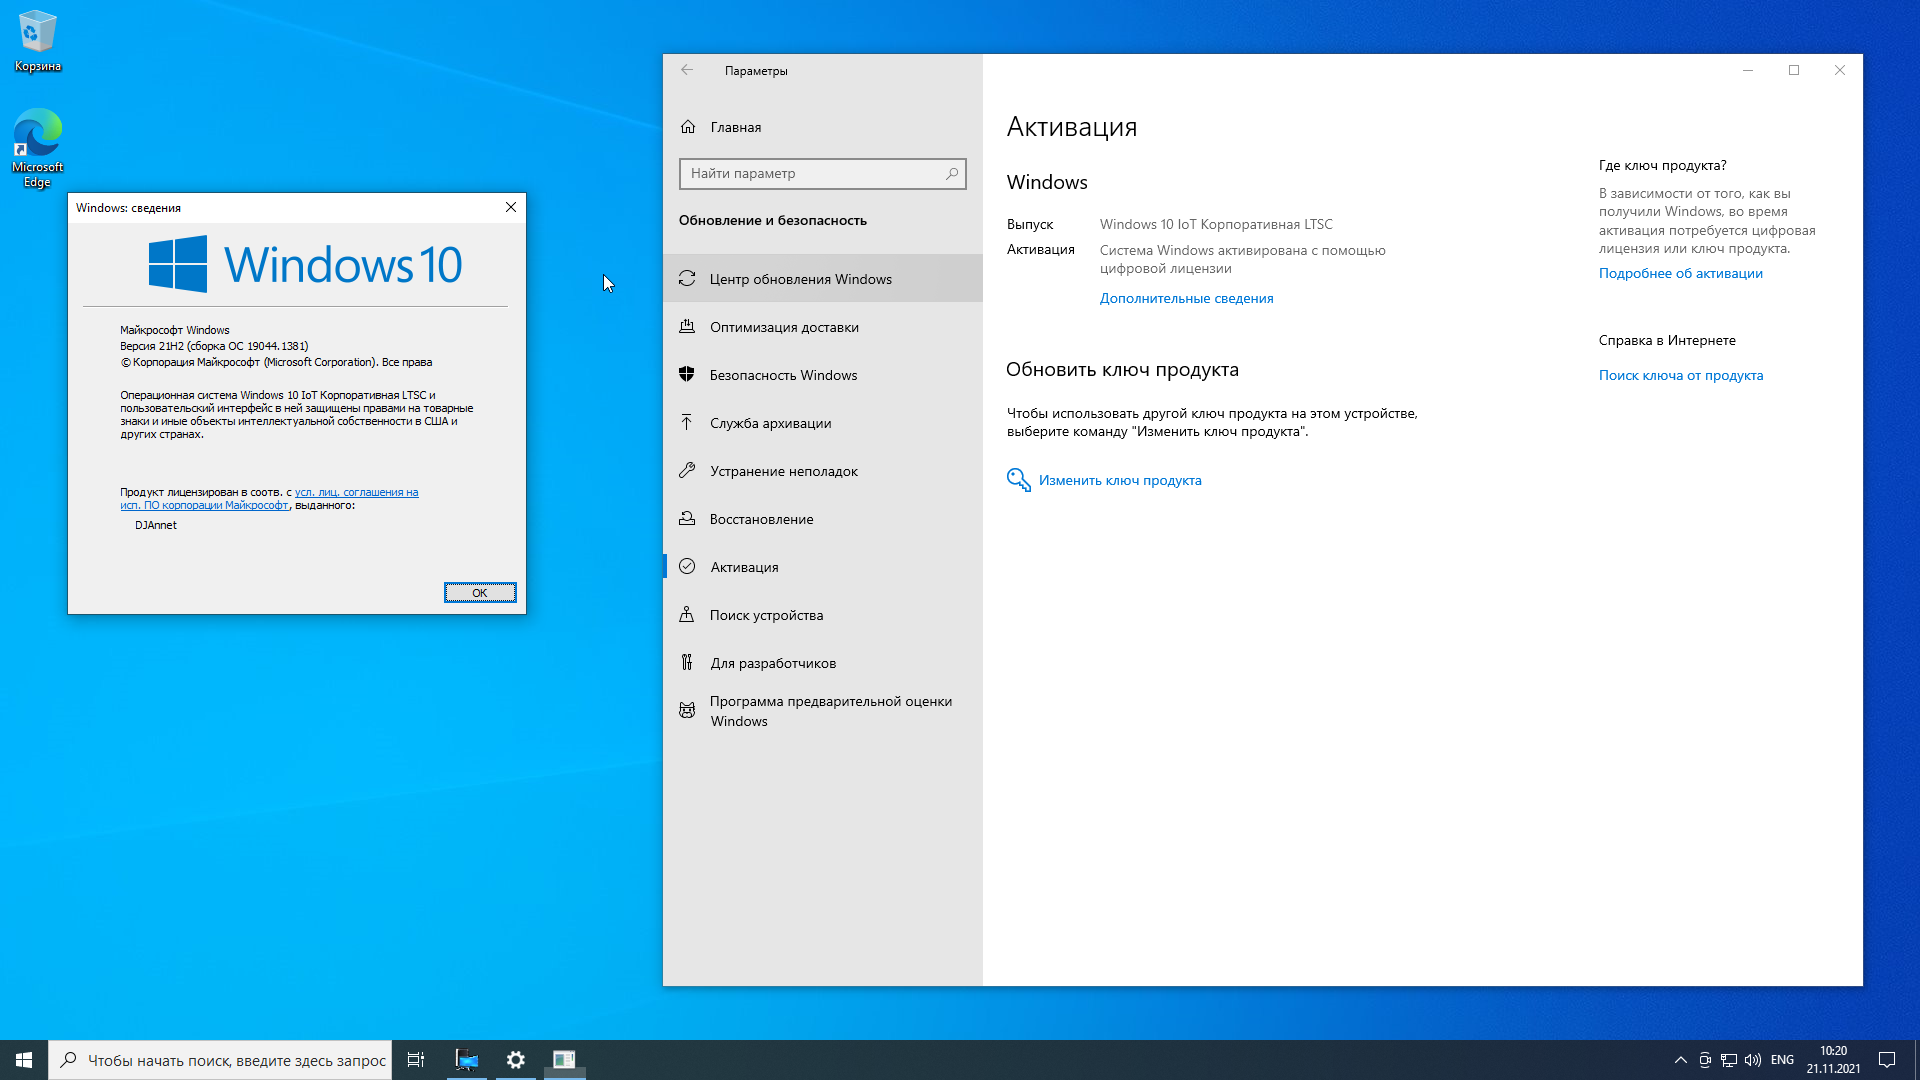 Windows 10 home 22h2 64 bit. Microsoft Windows 10 Enterprise 2021 LTSC. Windows 10 Enterprise (корпоративная). Windows 10 Enterprise корпоративная) 64 bit. Windows 10 корпоративная LTSC 2021.